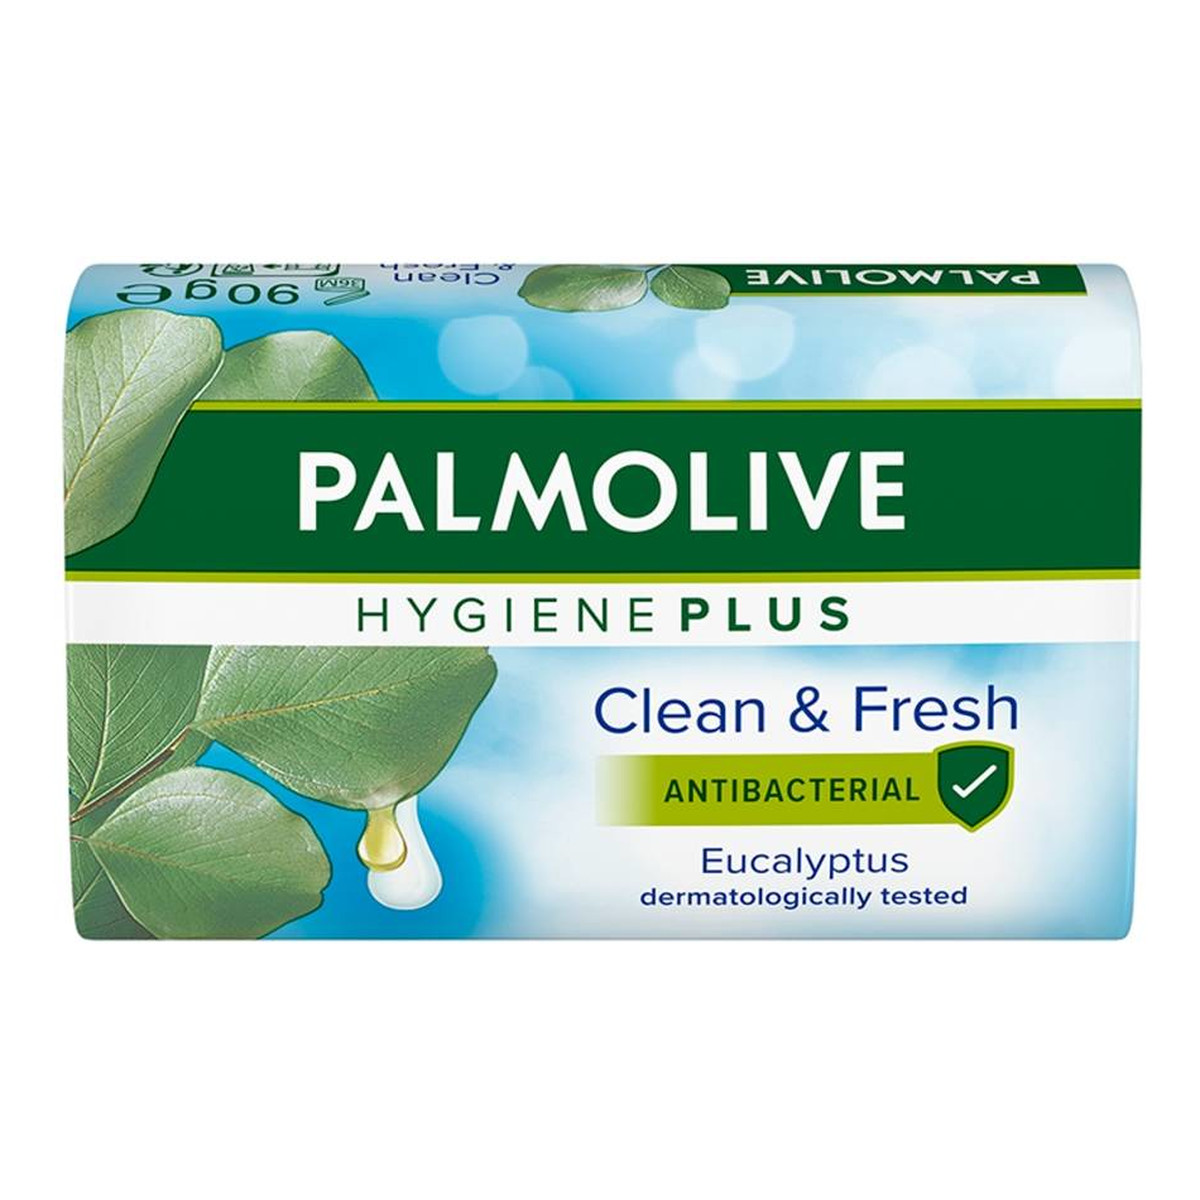 Palmolive Hygiene Plus Mydło antybakteryjne w kostce - Eucalyptus 90g